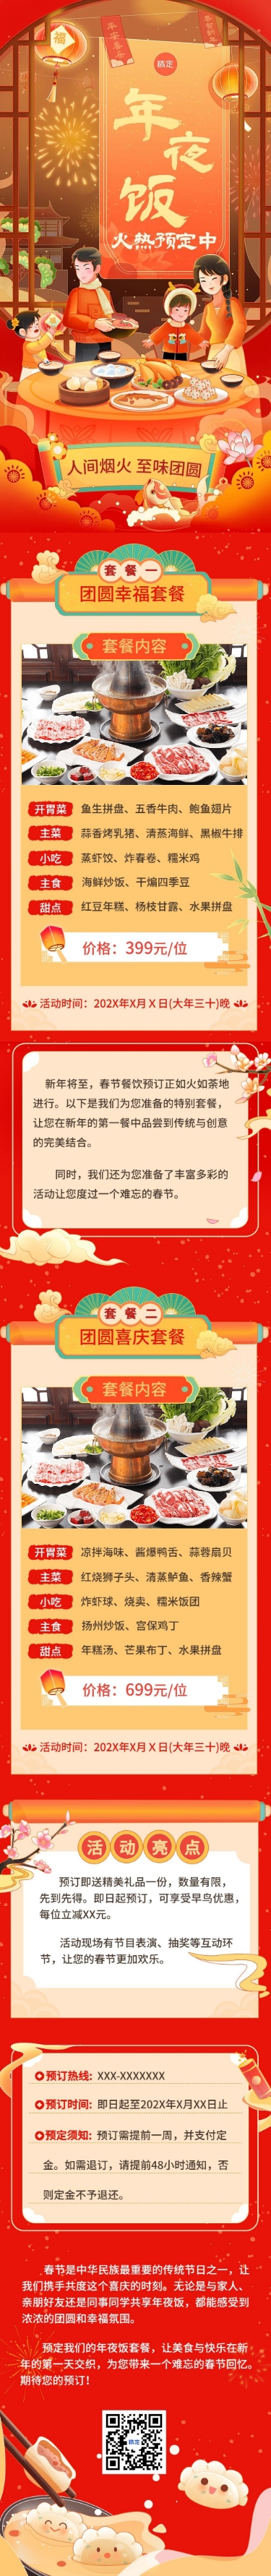 春节年夜饭预订餐饮门店节日营销文章长图